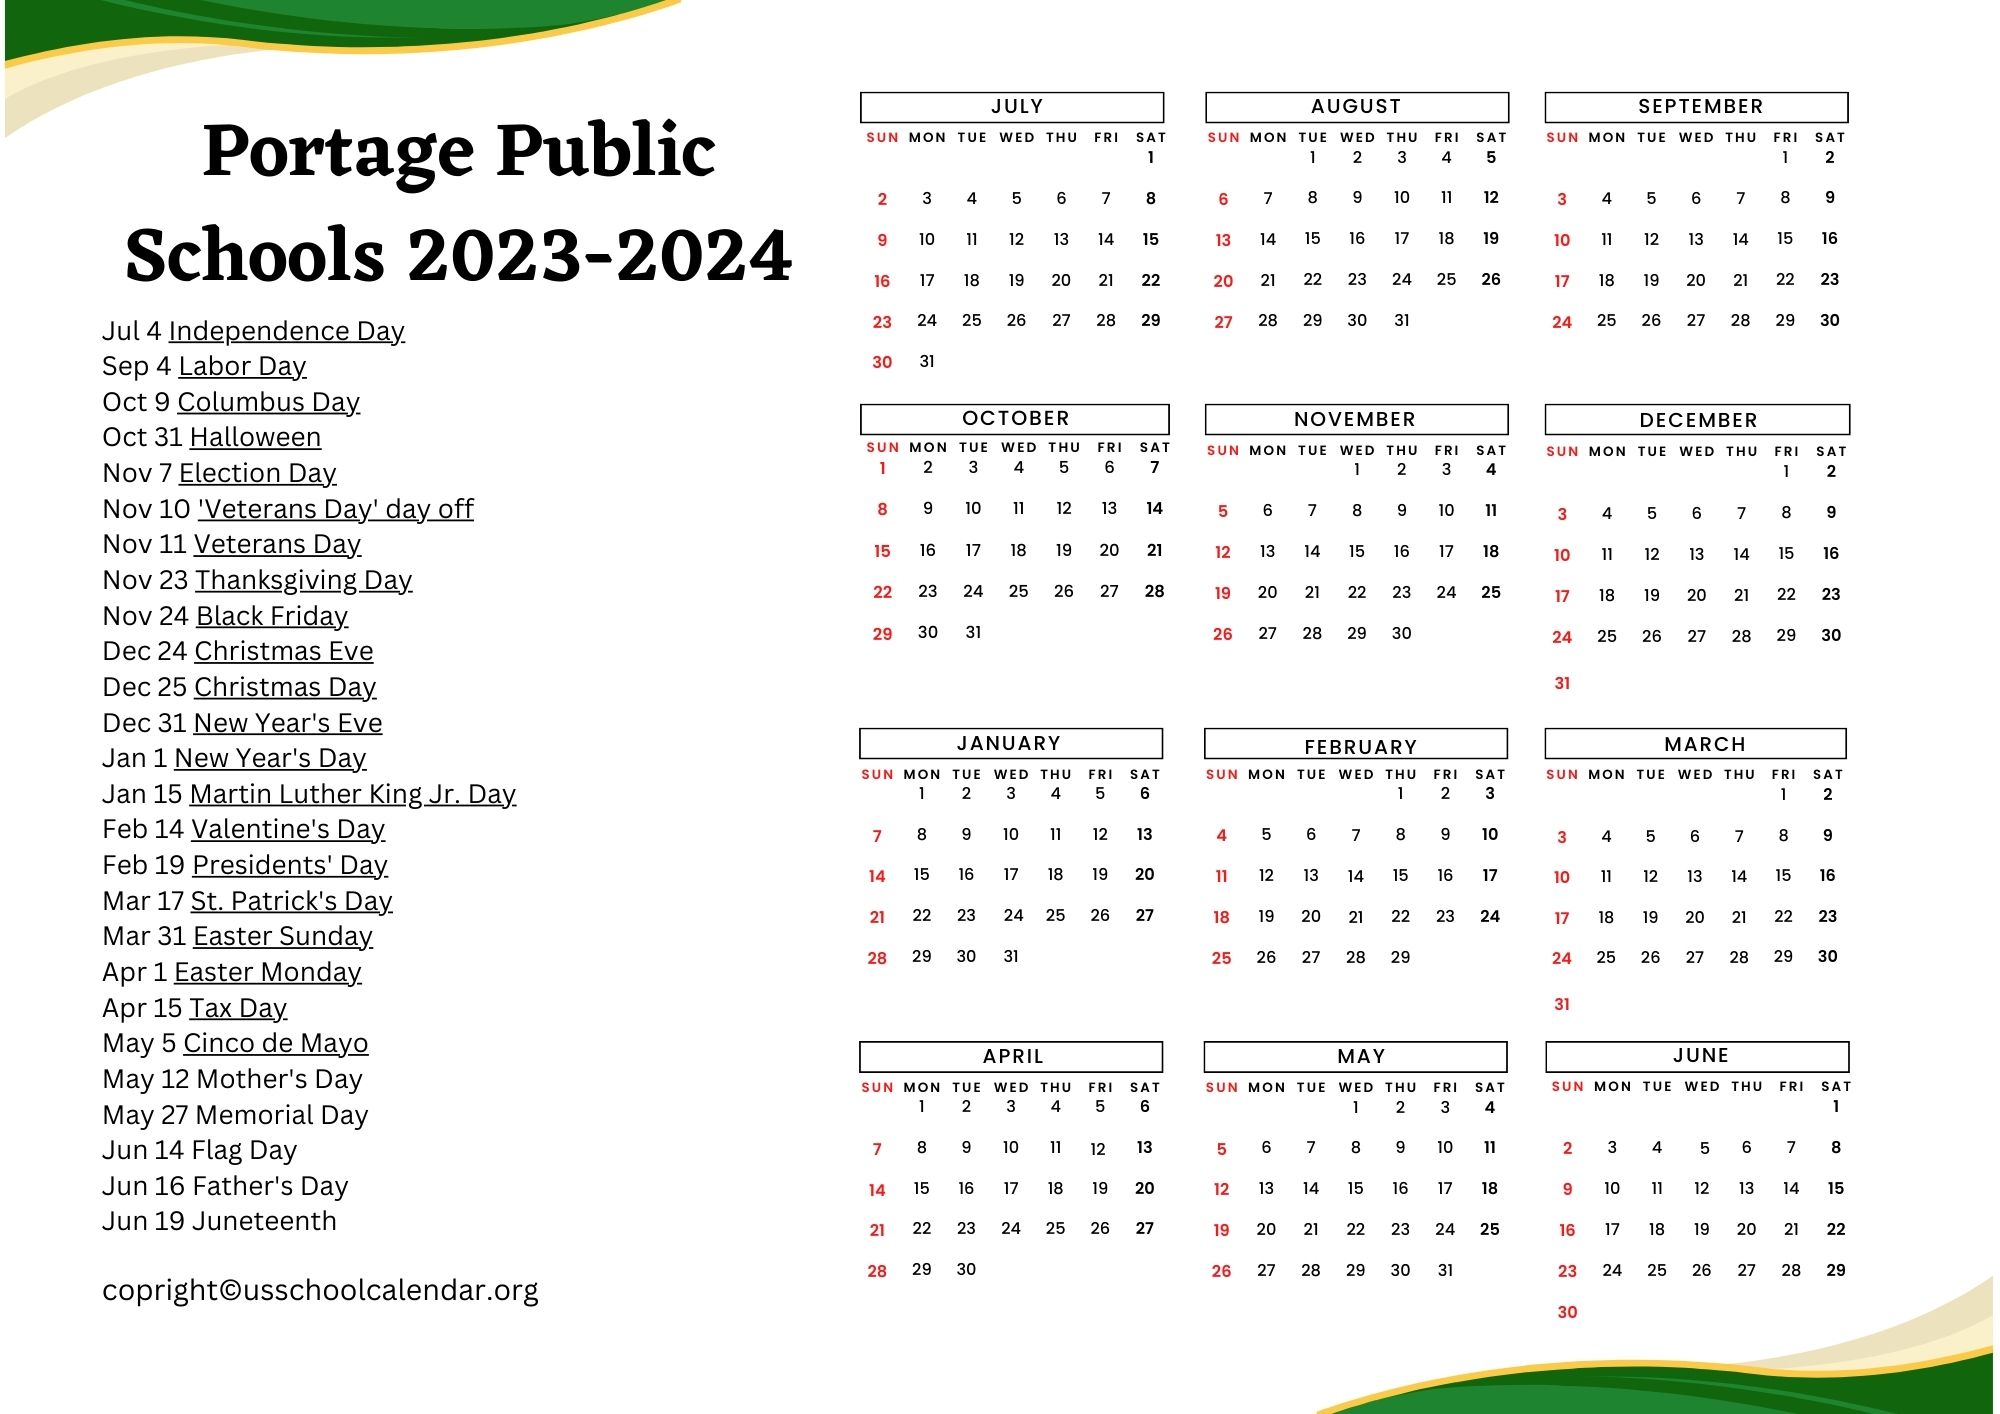 portage-public-schools-calendar-with-holidays-2023-2024